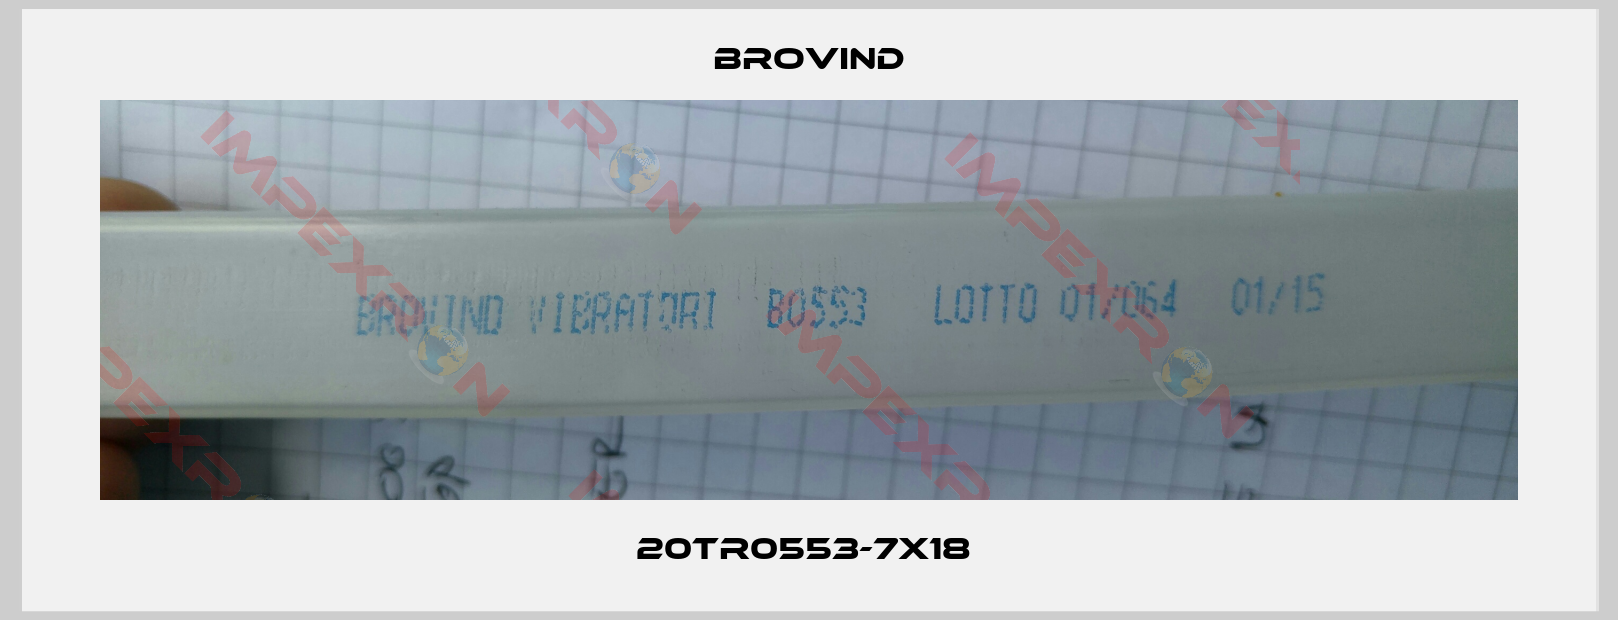 Brovind-20TR0553-7X18 